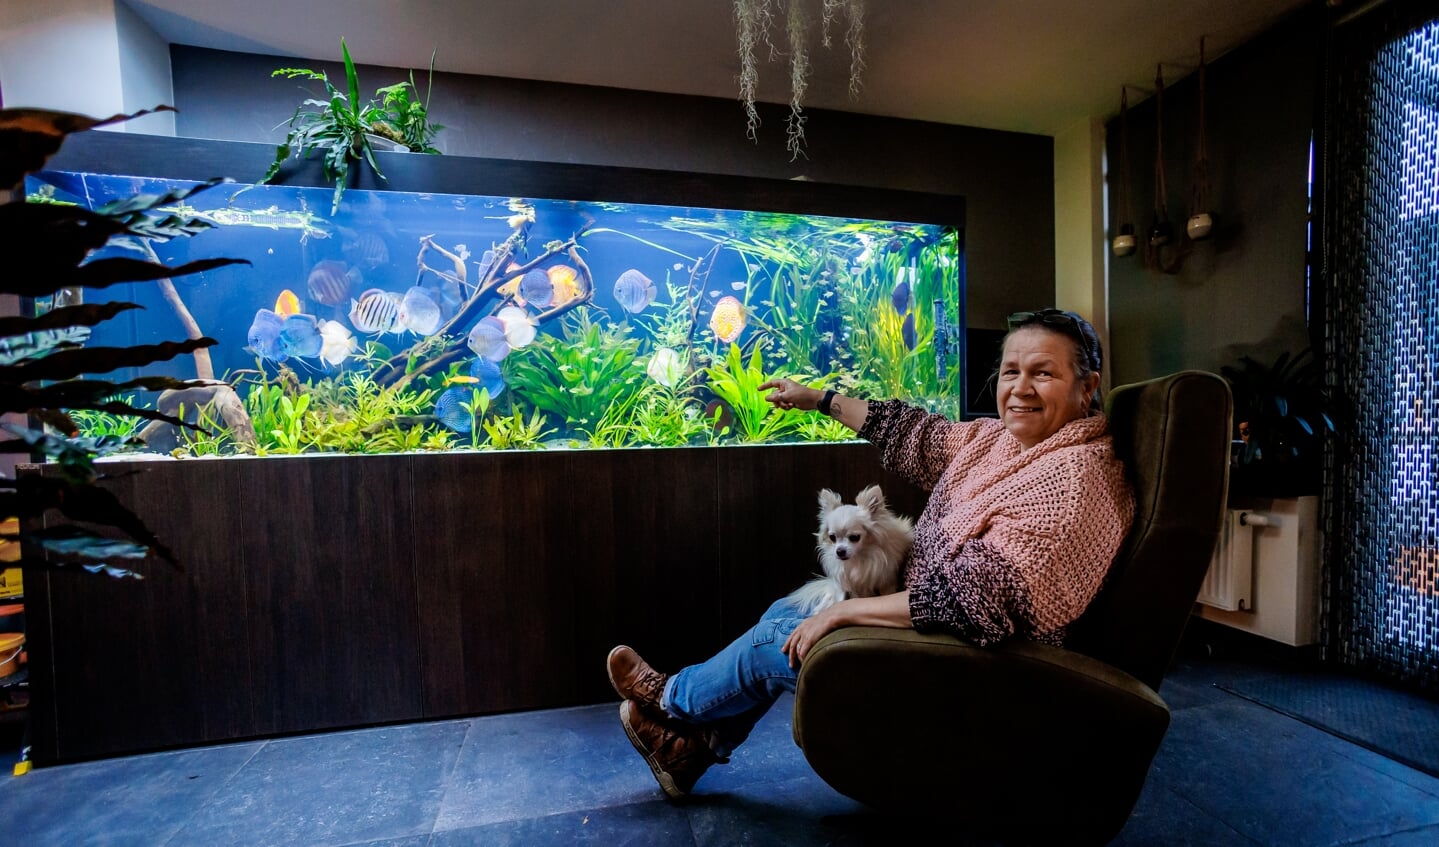 Kennis maken corruptie Pijnboom Mariannes aquarium kost ruim 26.000 euro. 'Waarom op vakantie? Wij hebben  elke dag de tropen in huis' - Nederlands Dagblad. De kwaliteitskrant van  christelijk Nederland